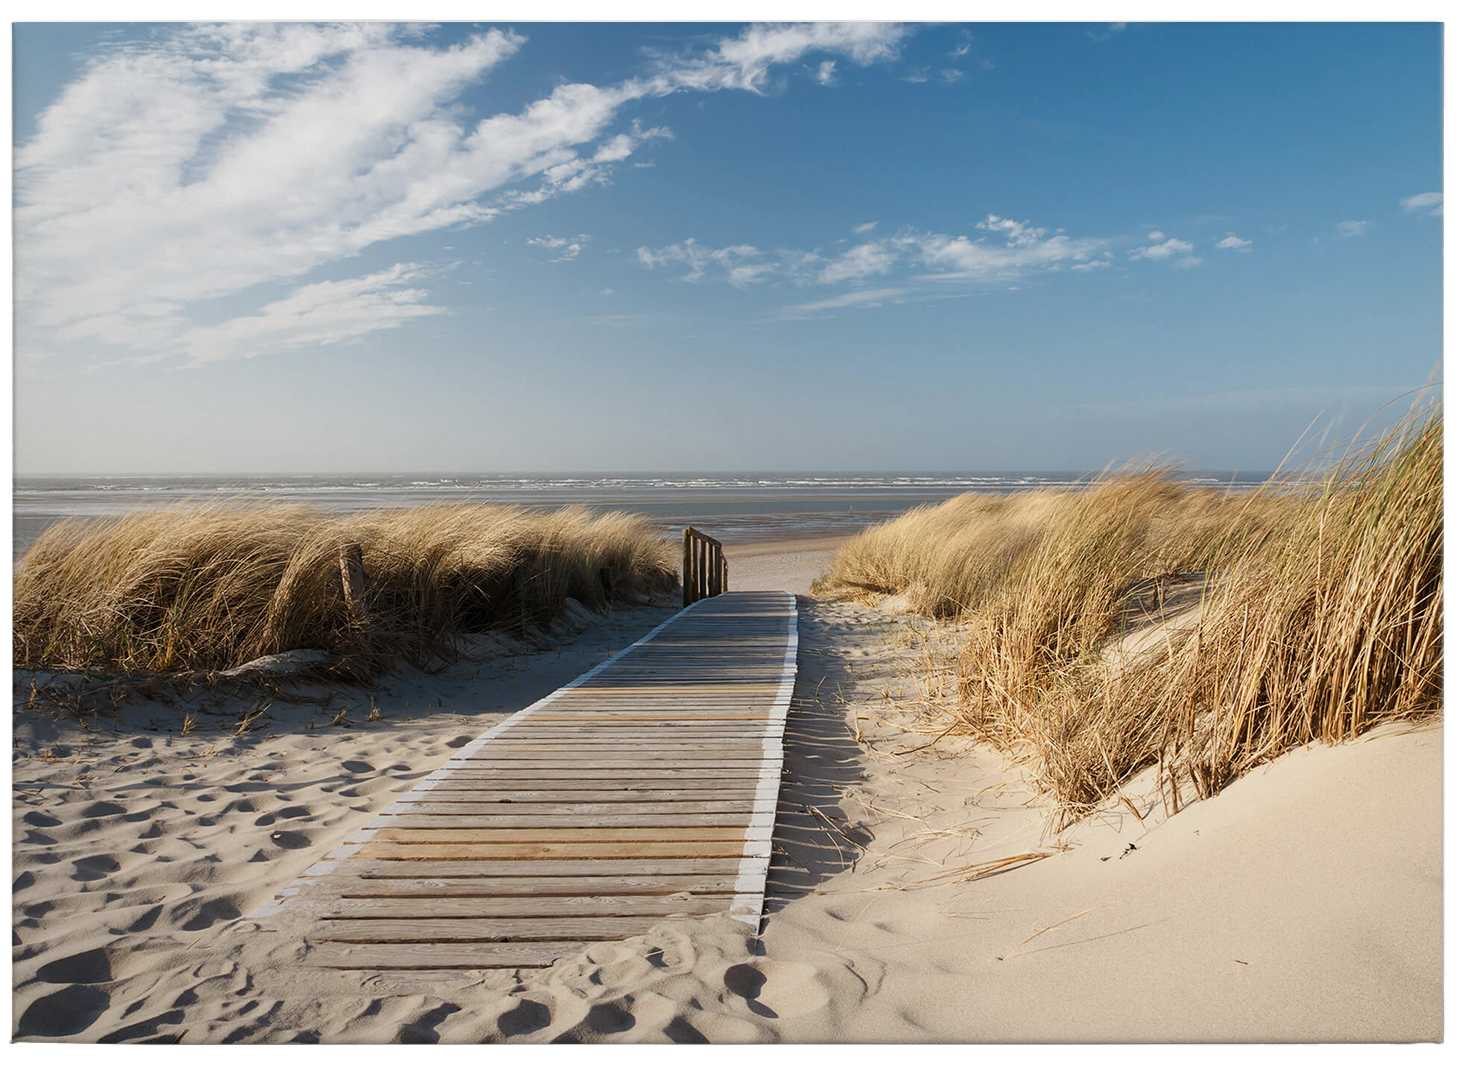             Baltic sea canvas print beach and sea – blue, beige
        